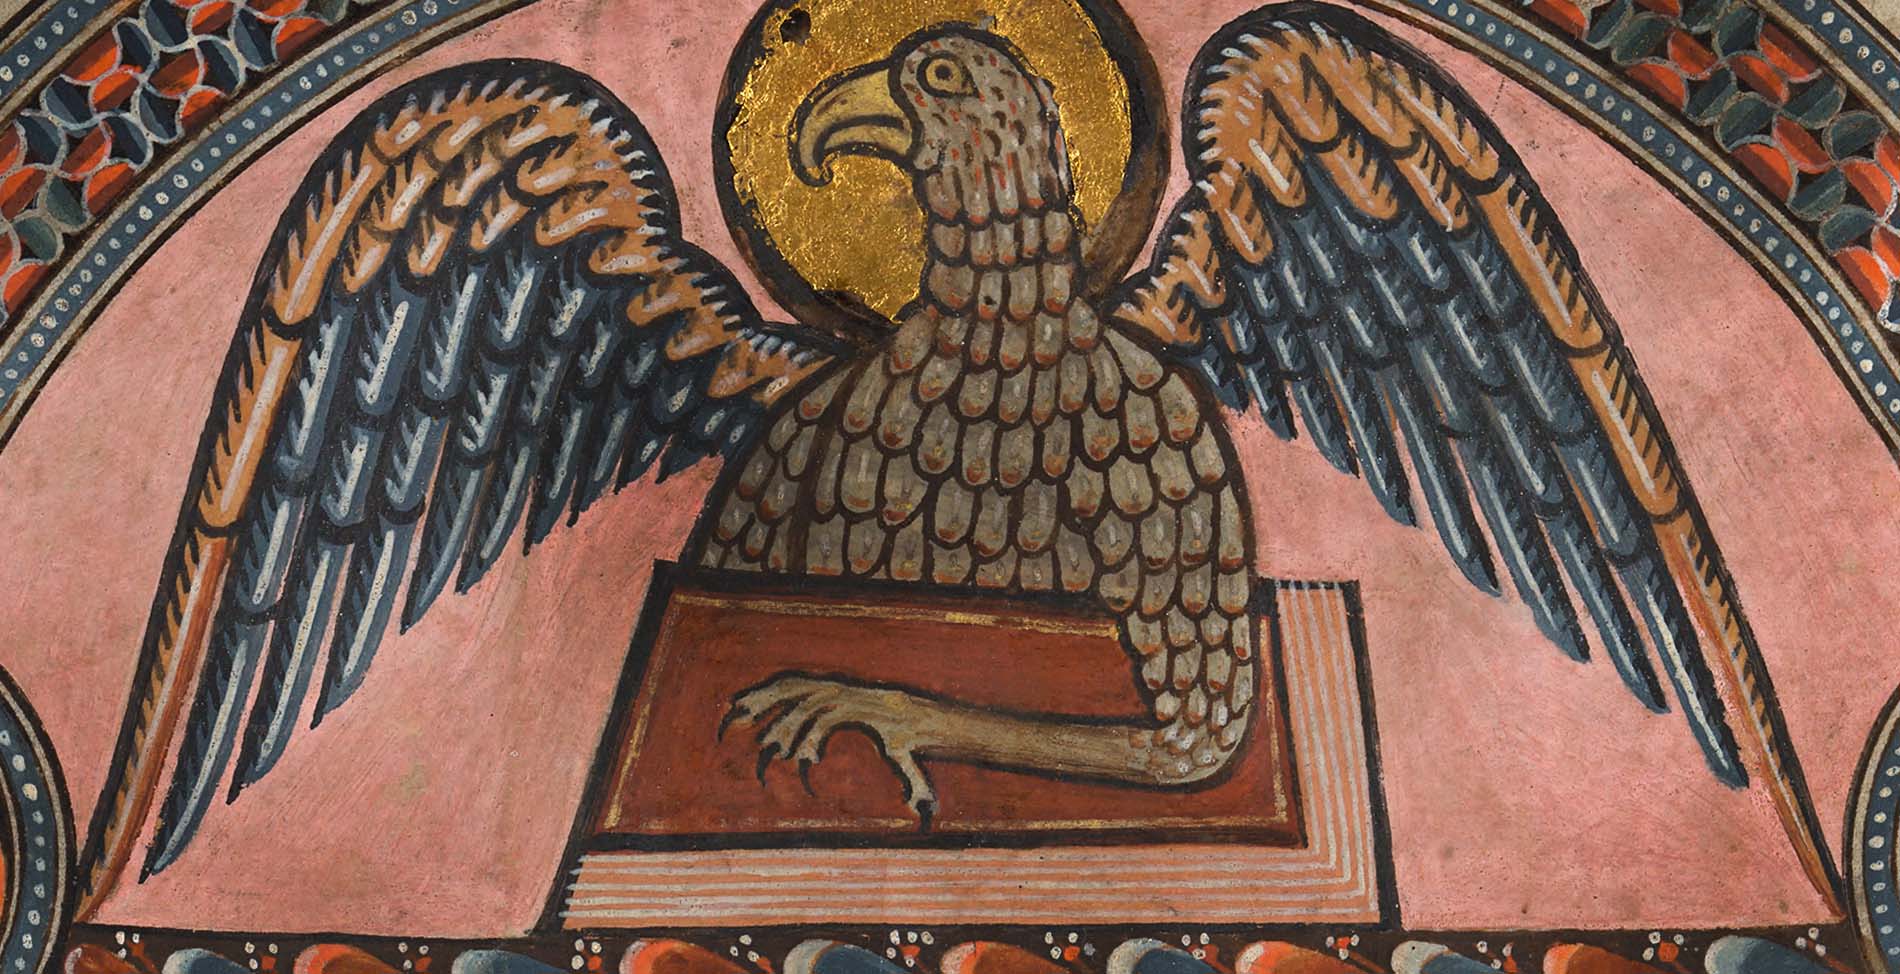 En detaljbild av en örn med färgglada vingar med ena klon liggande över en röd bok.